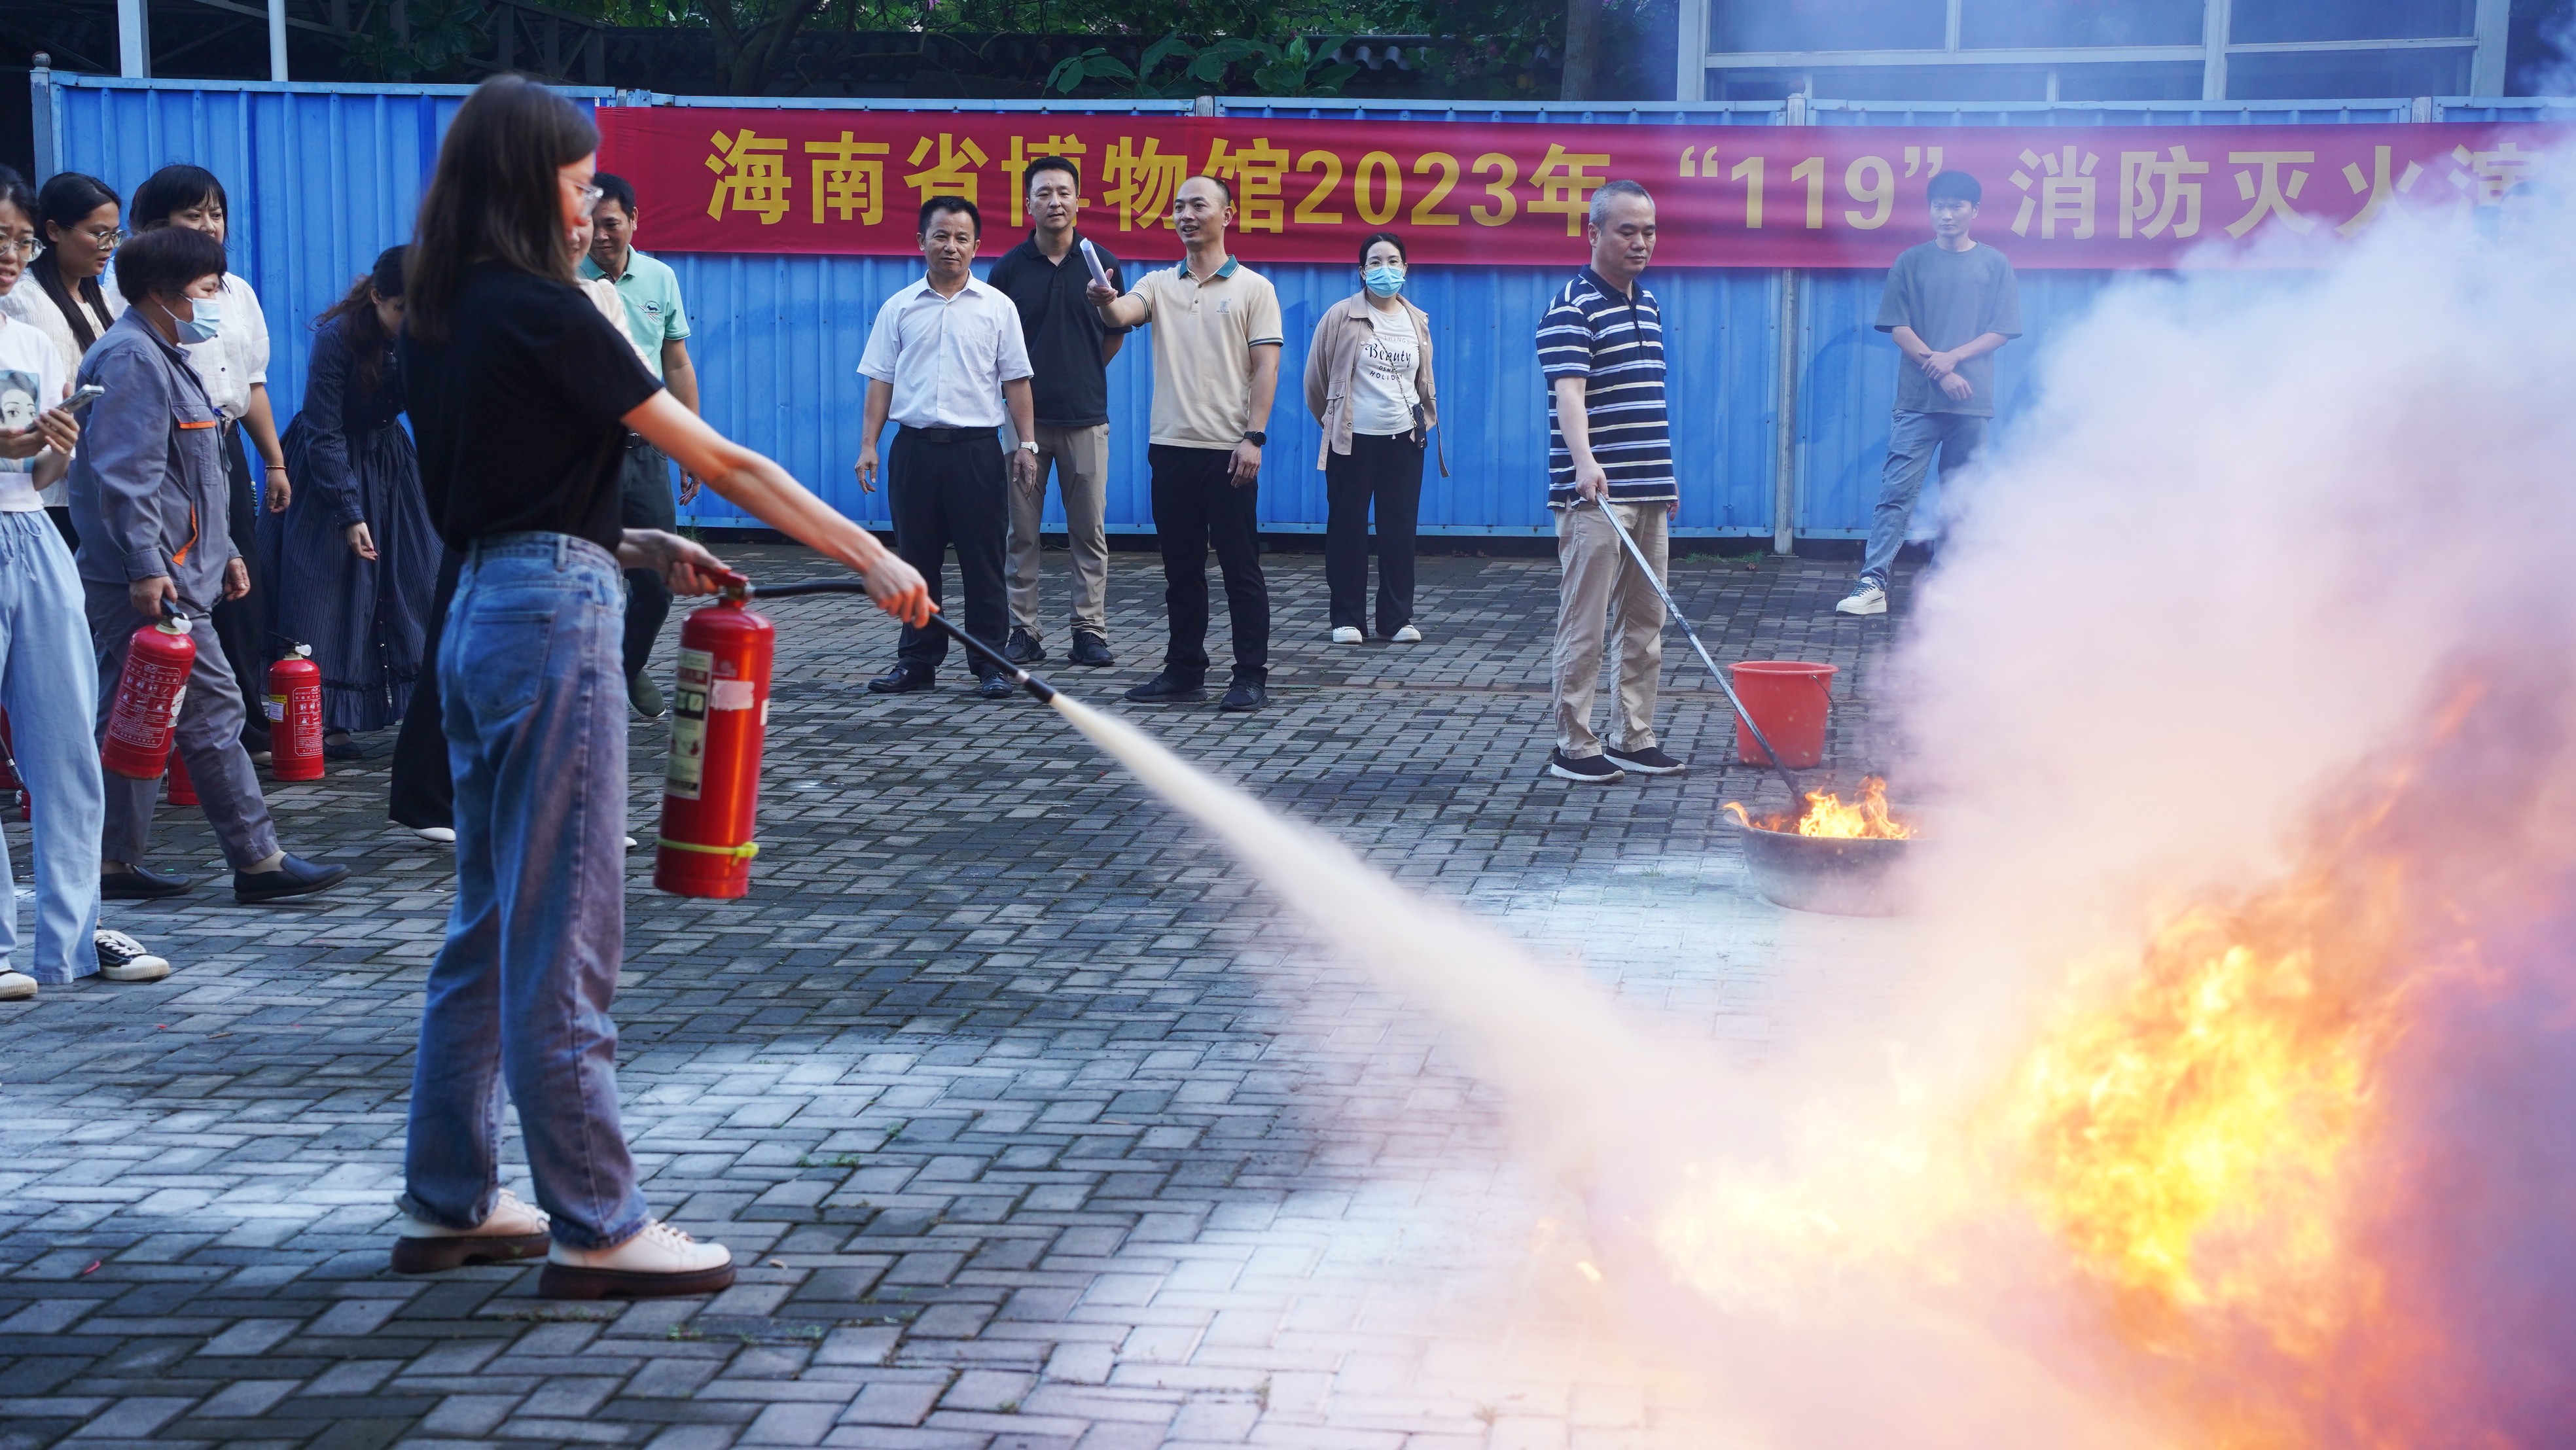 海南省博物馆举行2023年消防安全知识培训暨演练活动  提升员工应急处置能力